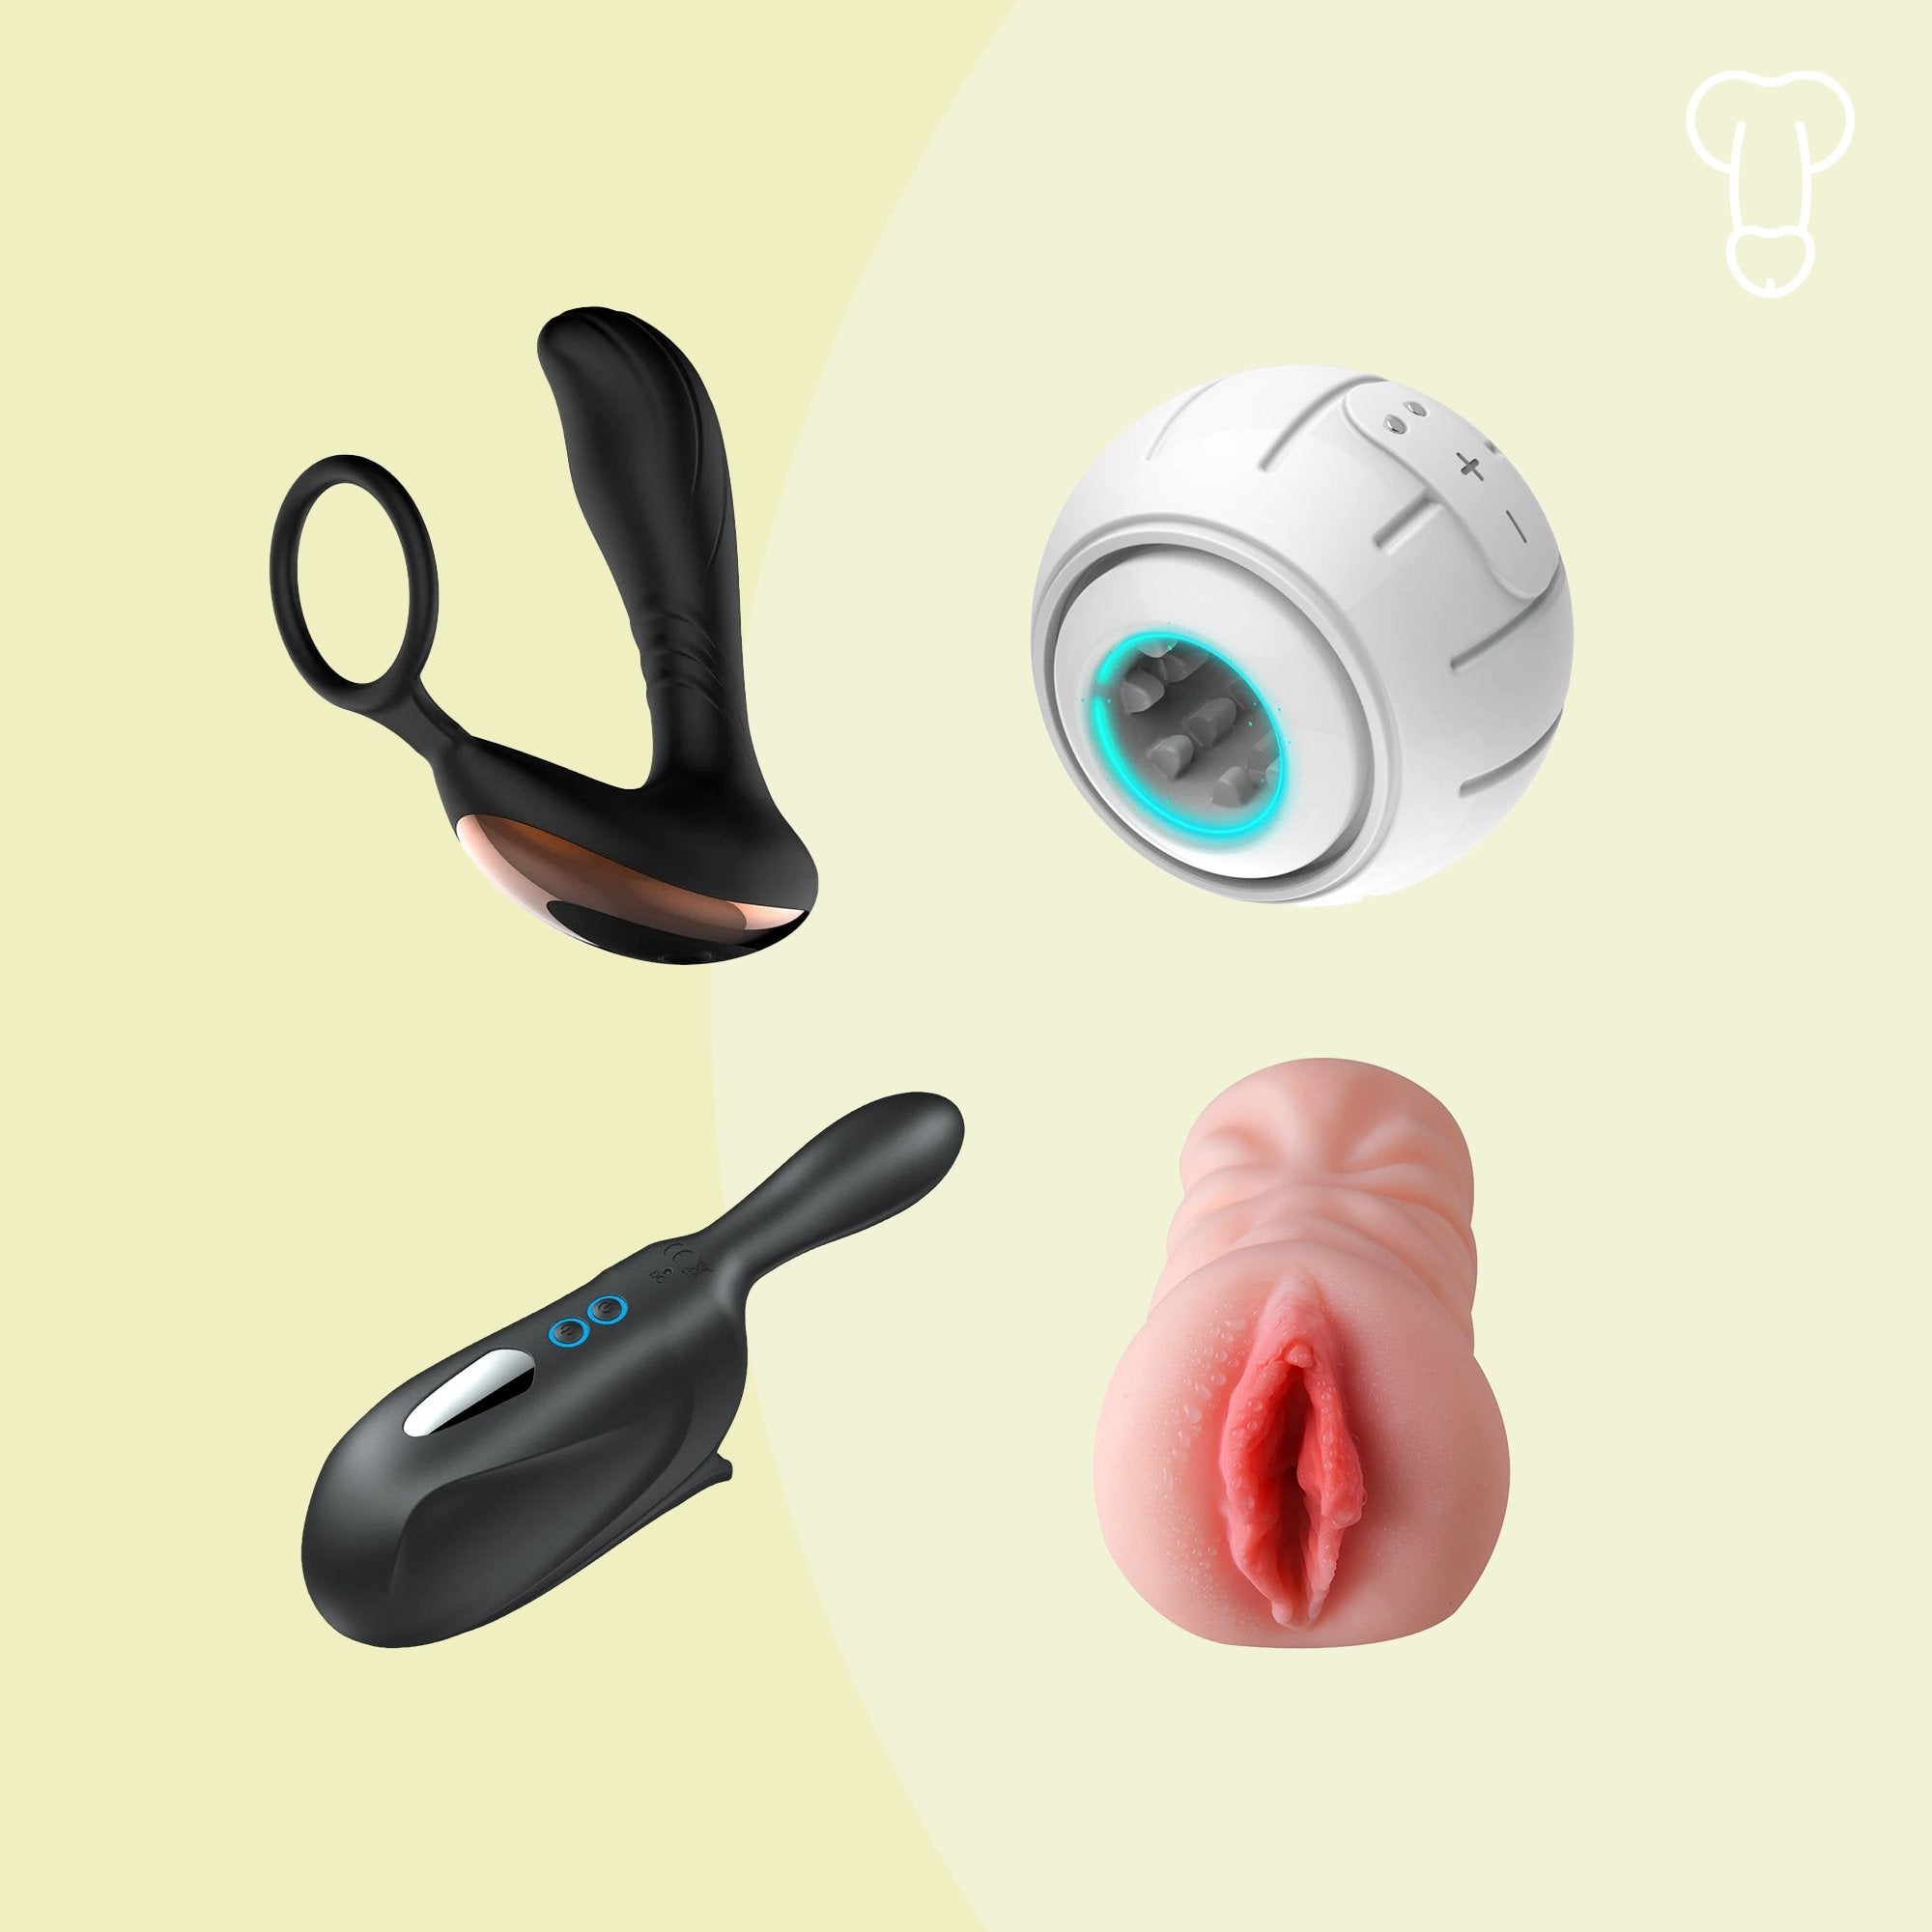 Sexspielzeug für Männer - die besten Toys für Ihn